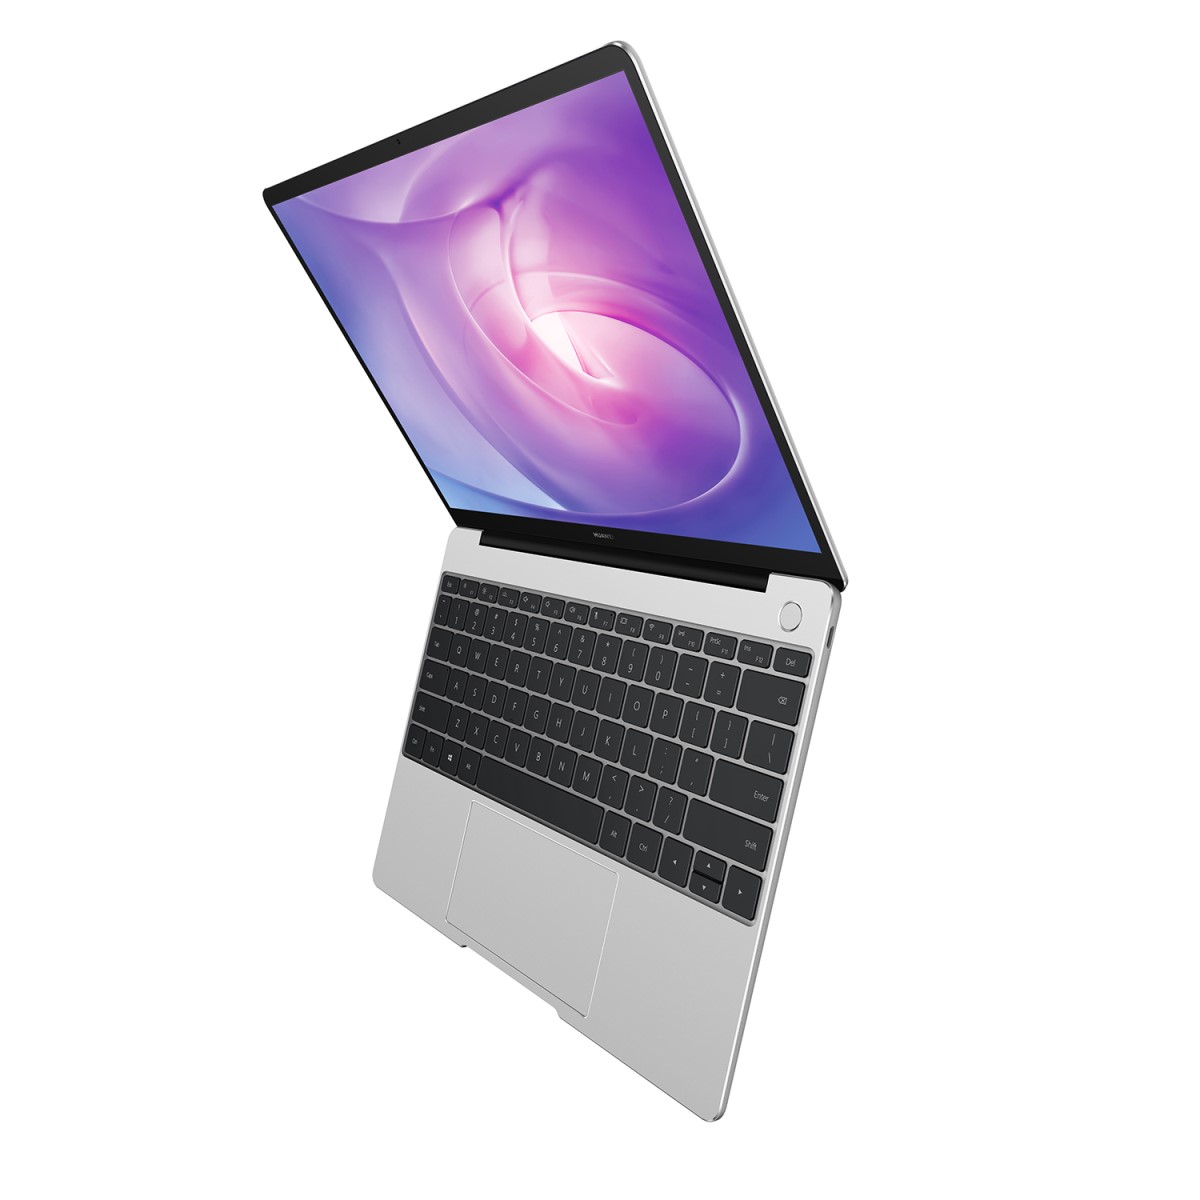 https://gadget.ro/wp-content/uploads/2020/05/Huawei-MateBook-13-Intel-Edition-3.jpg